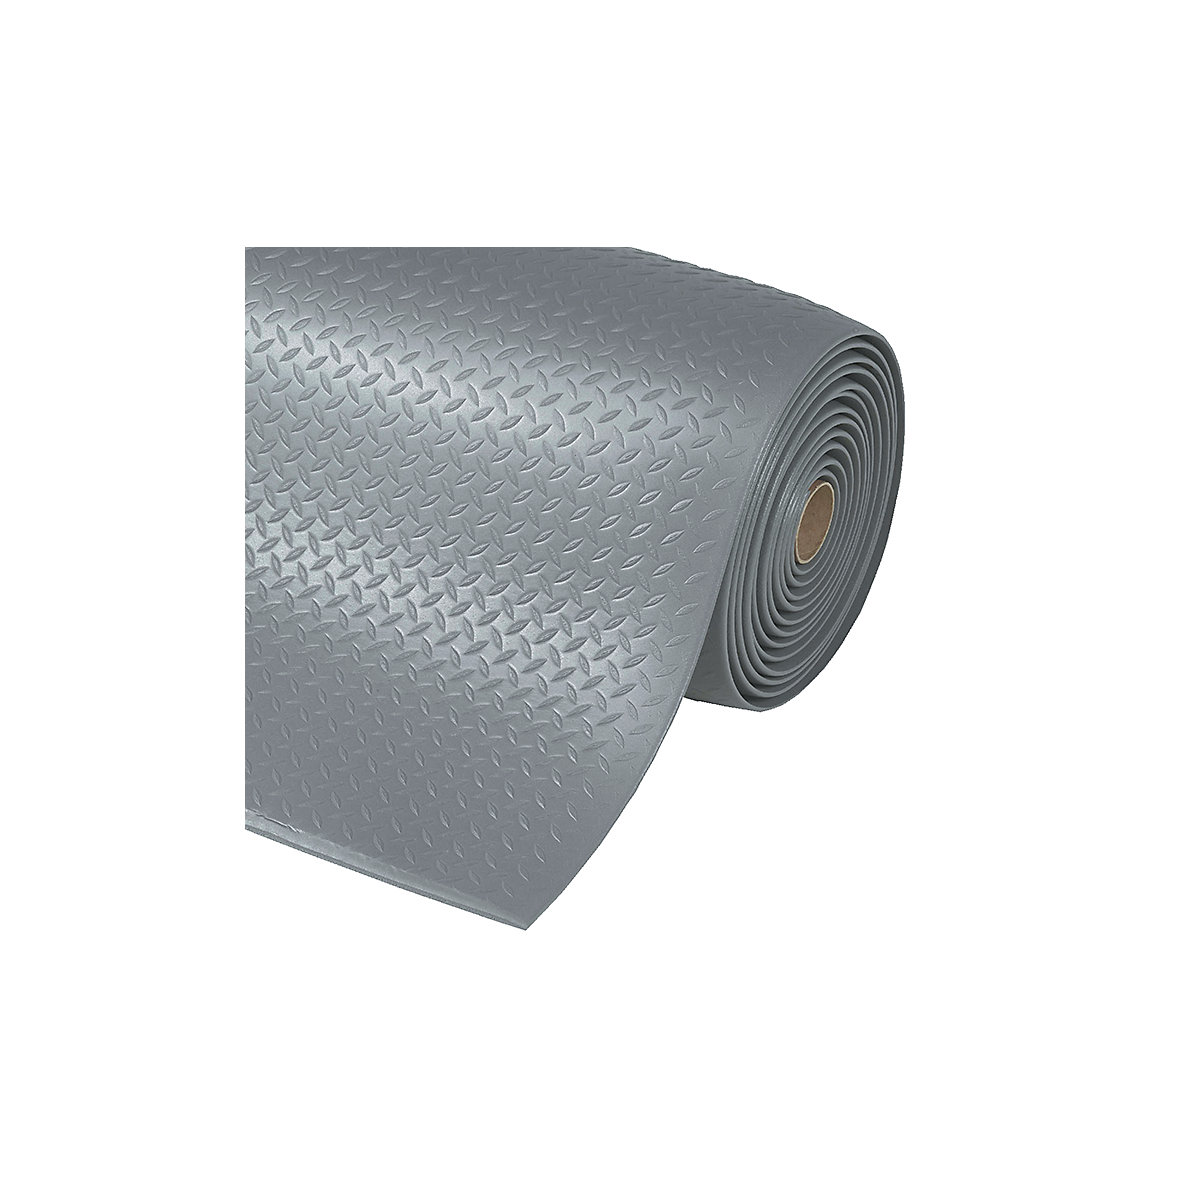 Tapis pour poste de travail Diamond Sof-Tred™ – NOTRAX, largeur 1220 mm, au mètre, gris-4